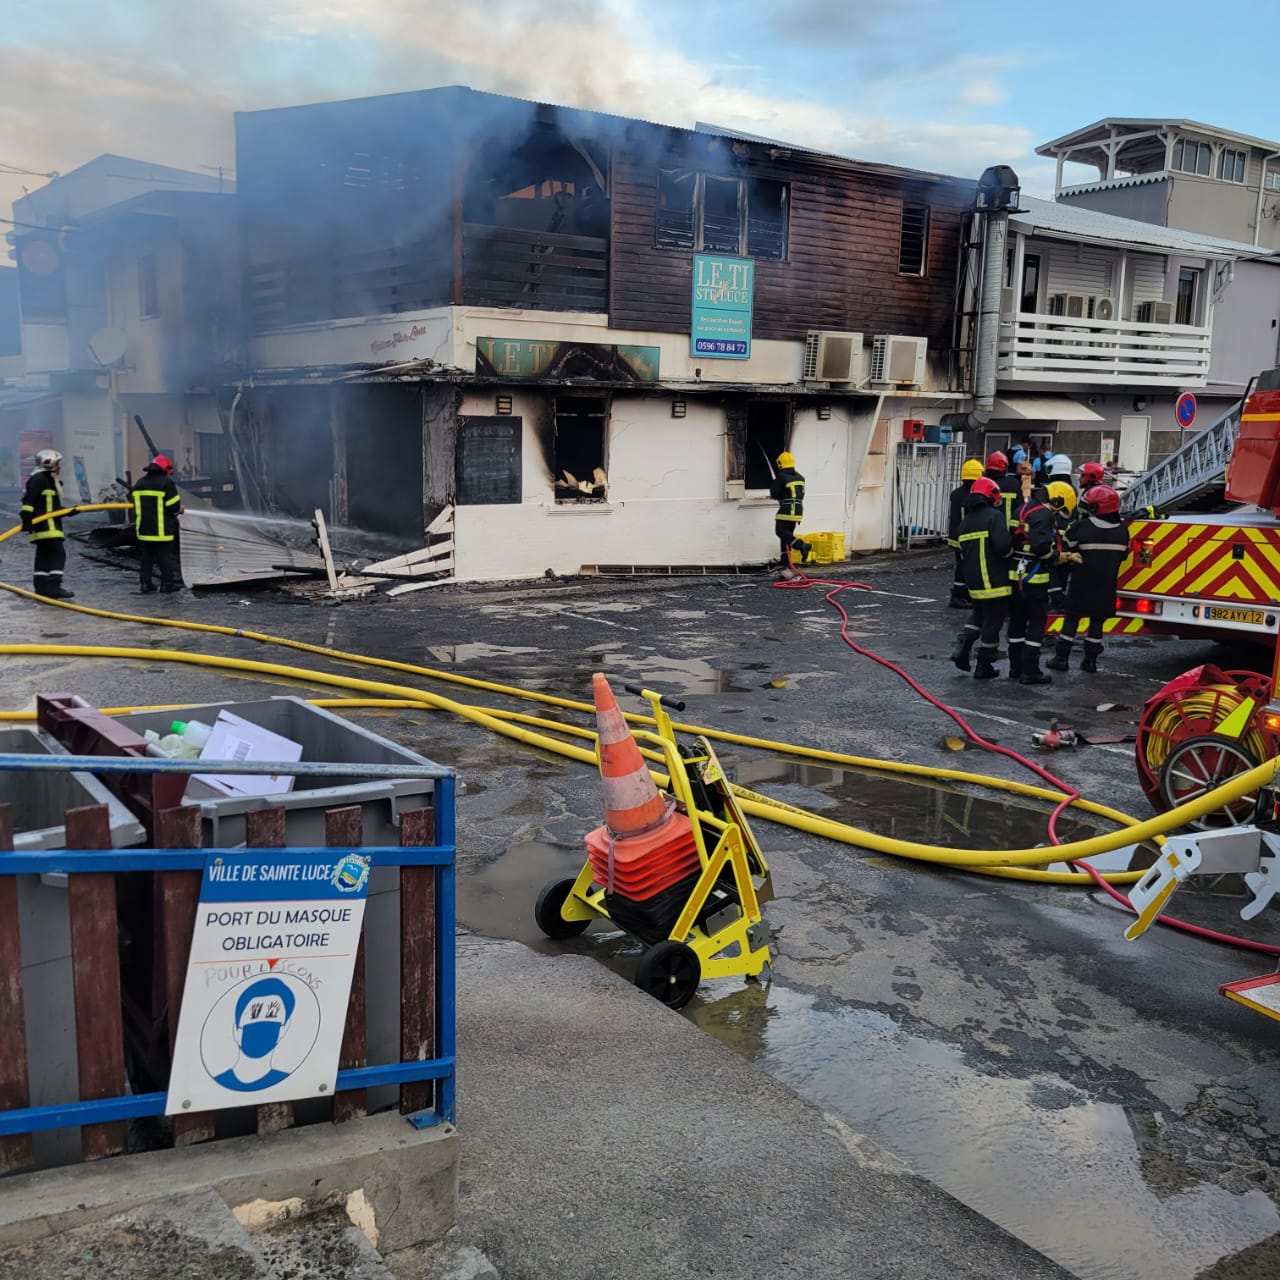     Incendie : « les flammes m'ont enlevé 8 années de travail », le gérant du Ti Sainte-Luce réagit

